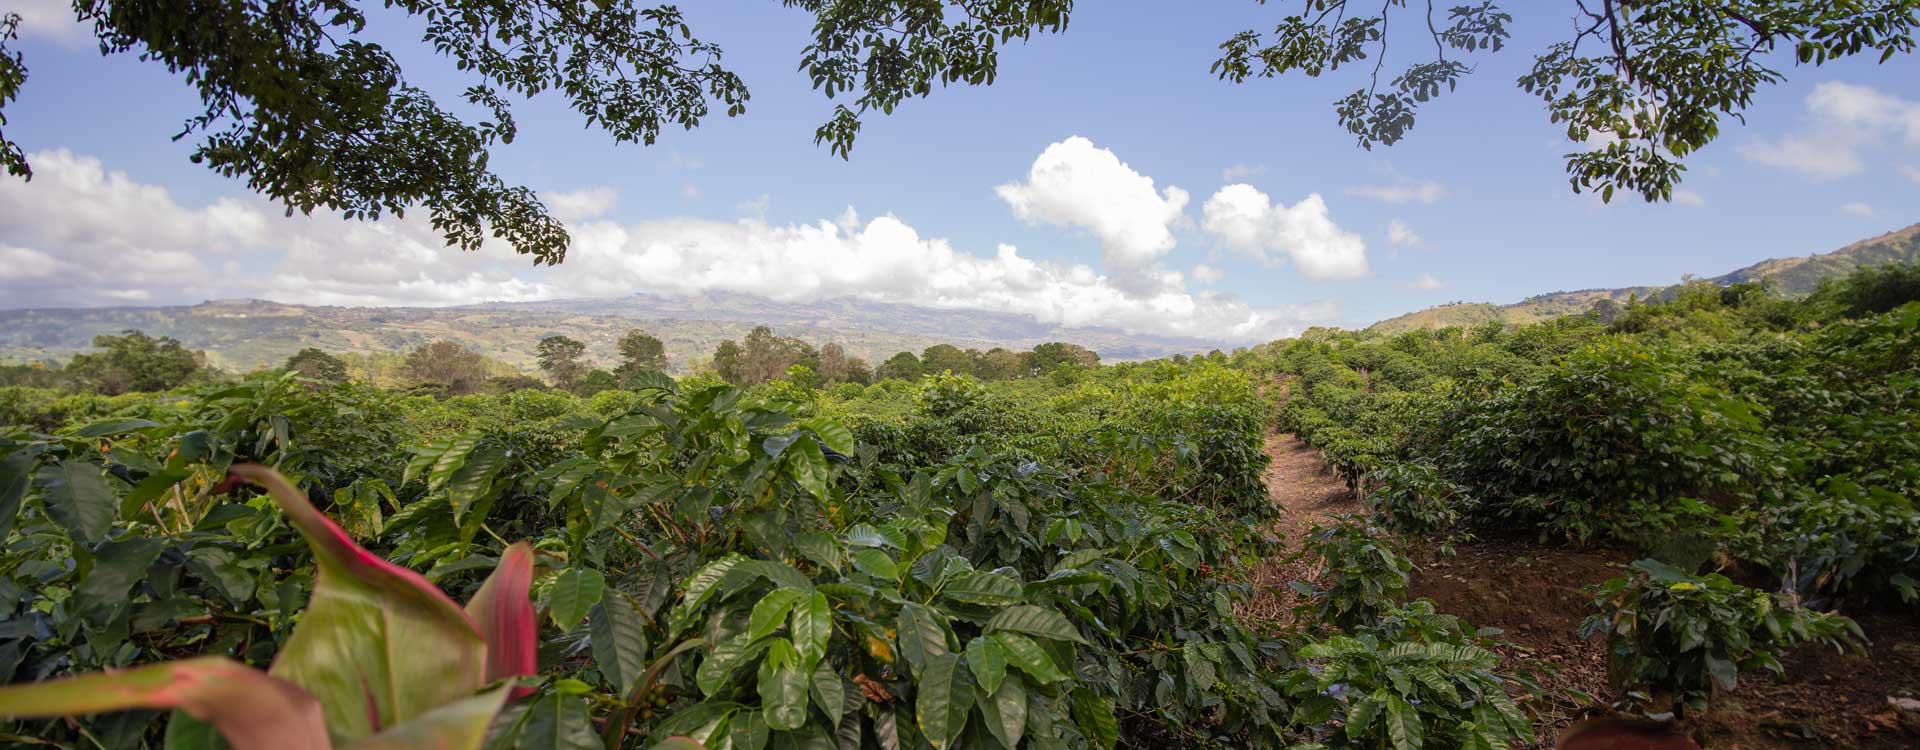 Małą plantacja kawy w Brazylii